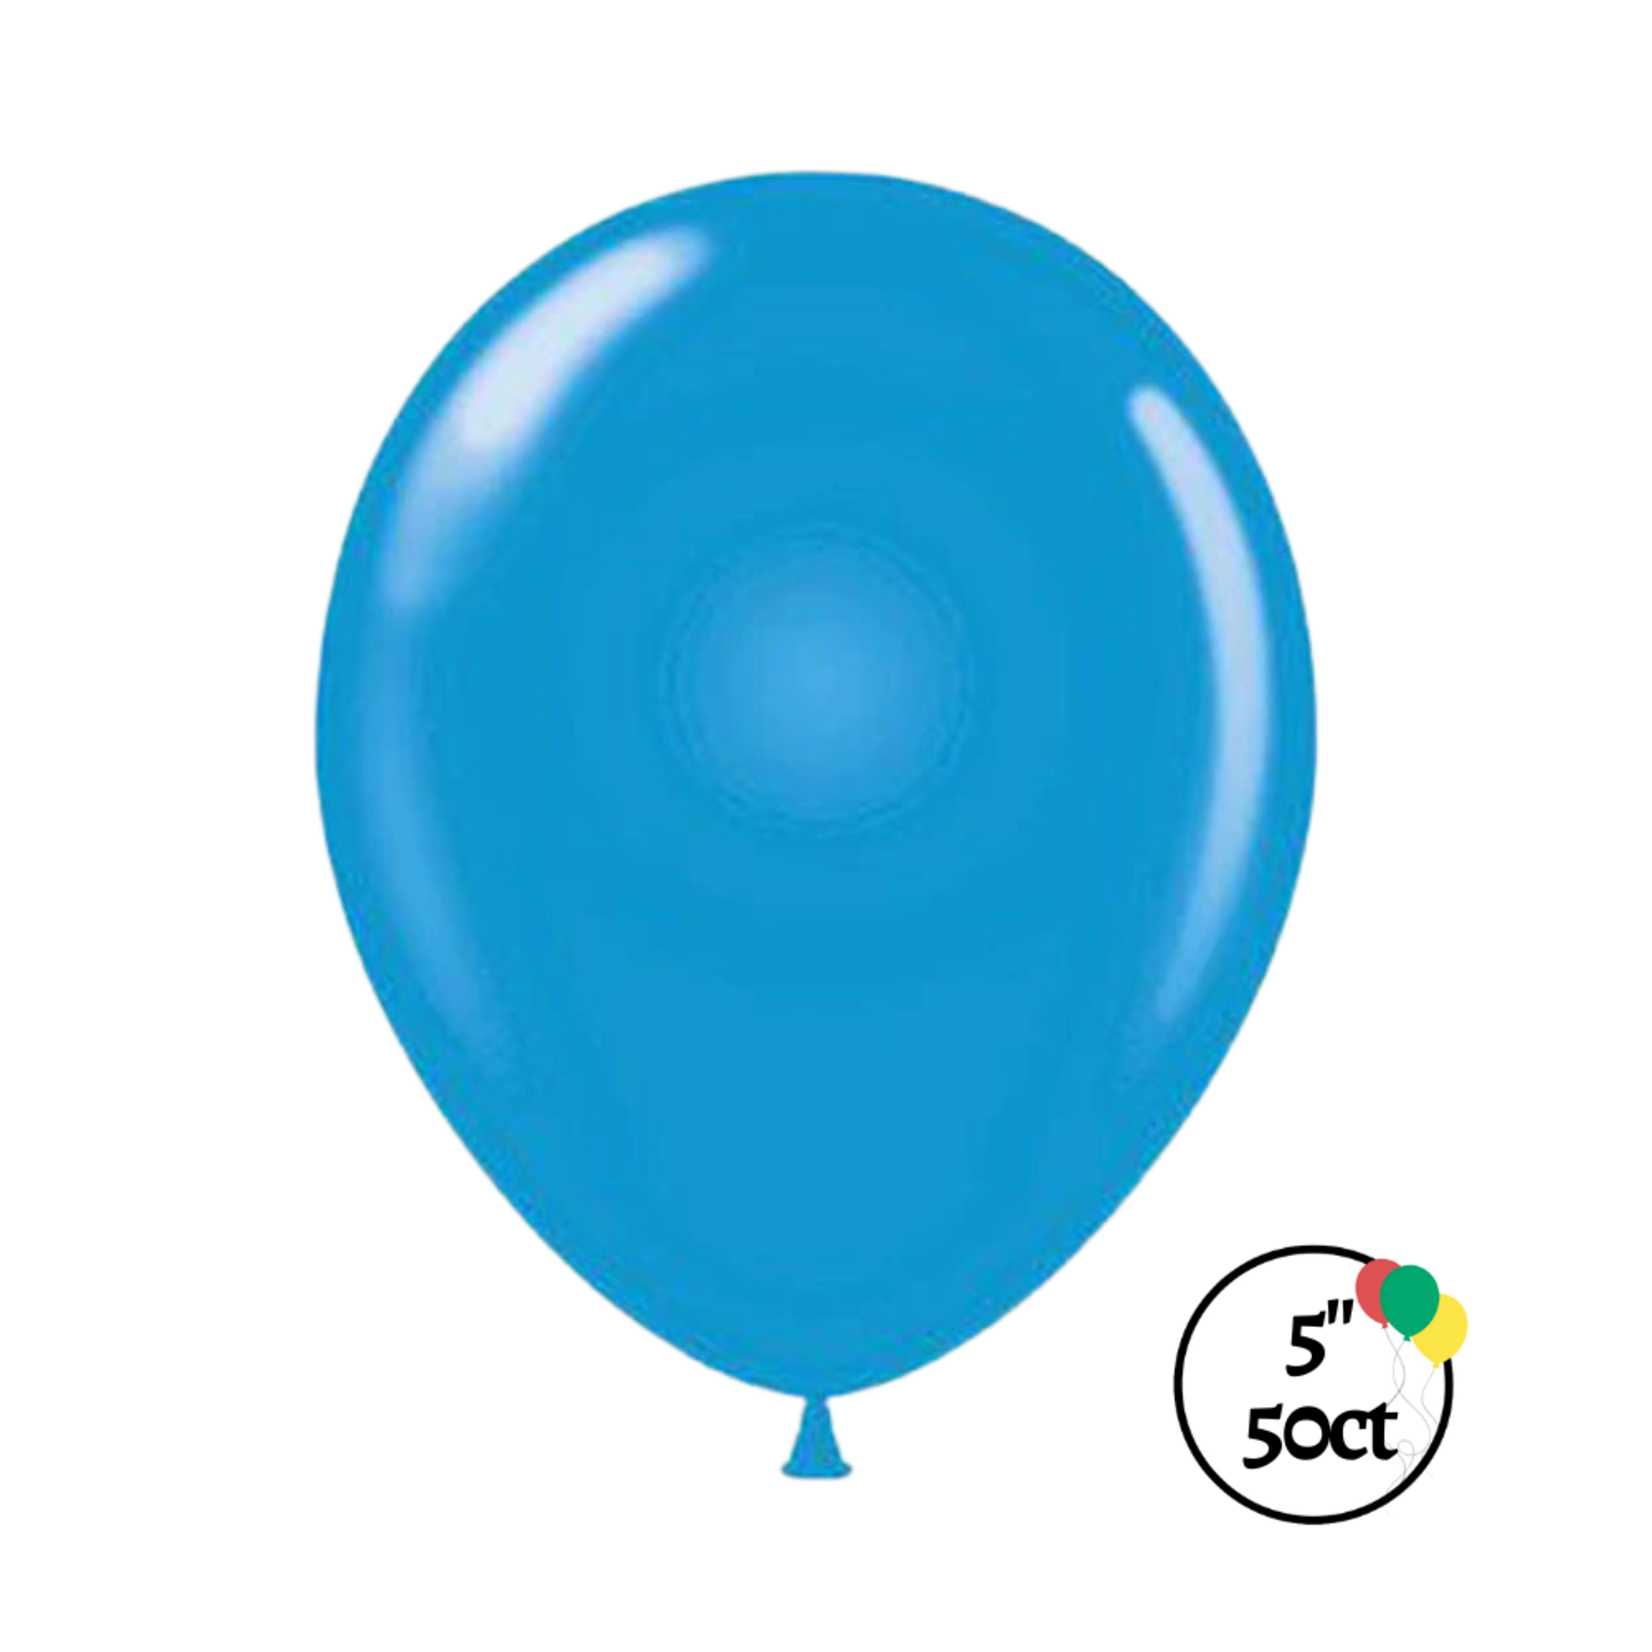 Tuftex 5" Tuftex Blue Balloon 50ct